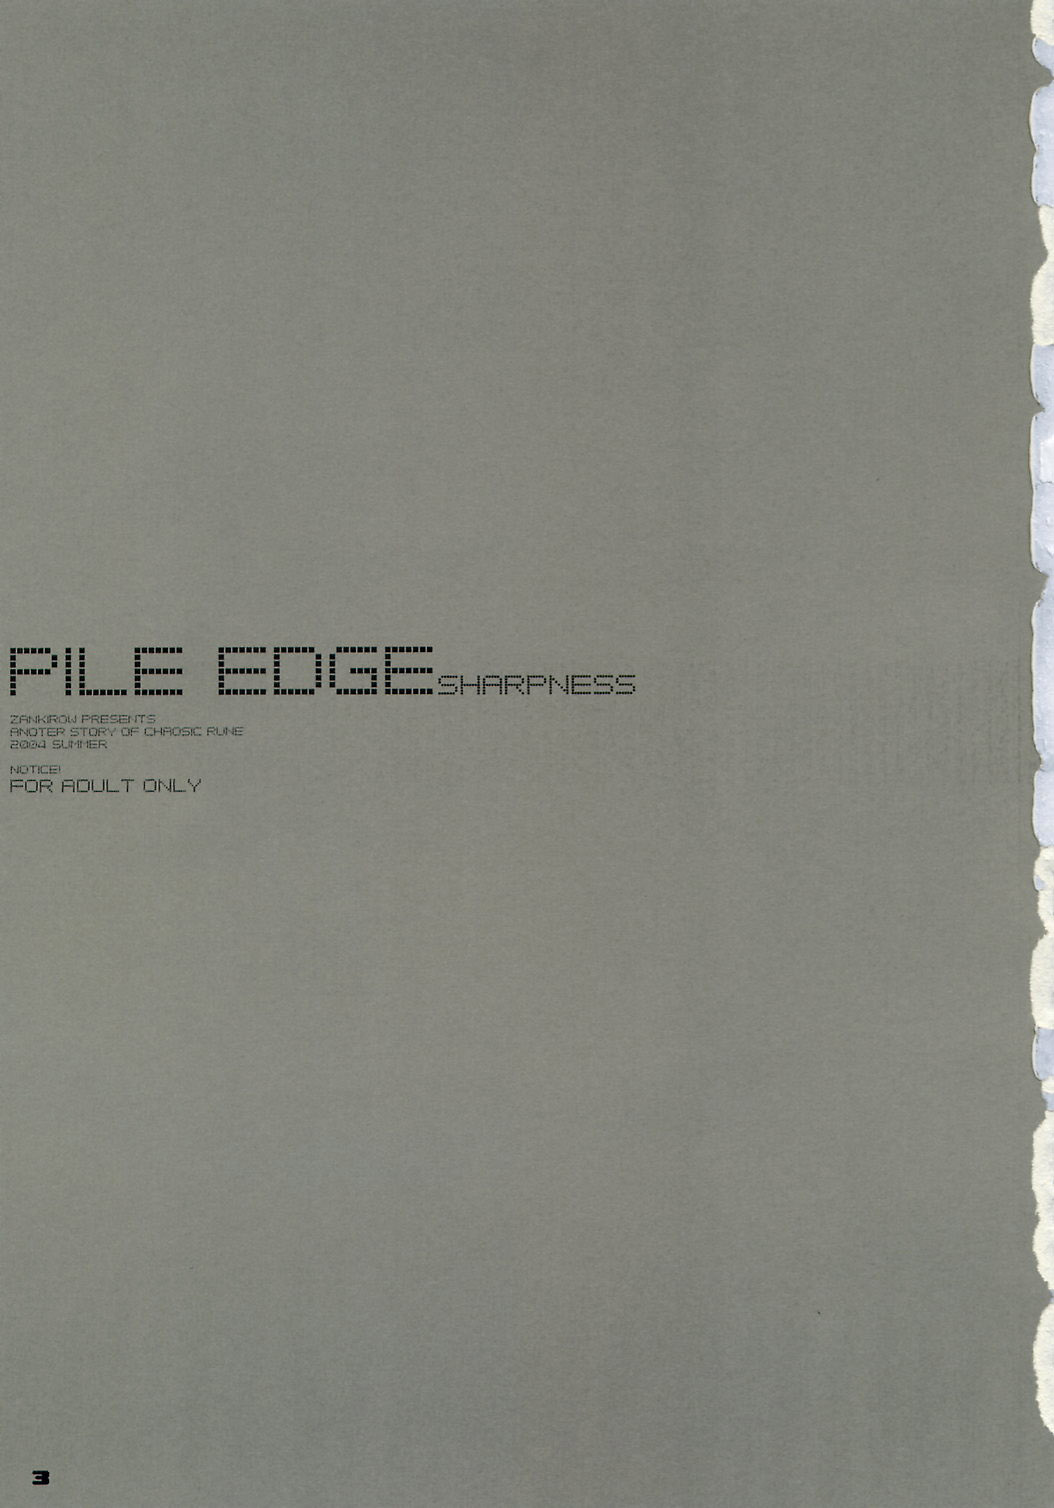 (C66) [斬鬼楼 (おにぎりくん)] PILE EDGE SHARPNESS (カオシックルーン)